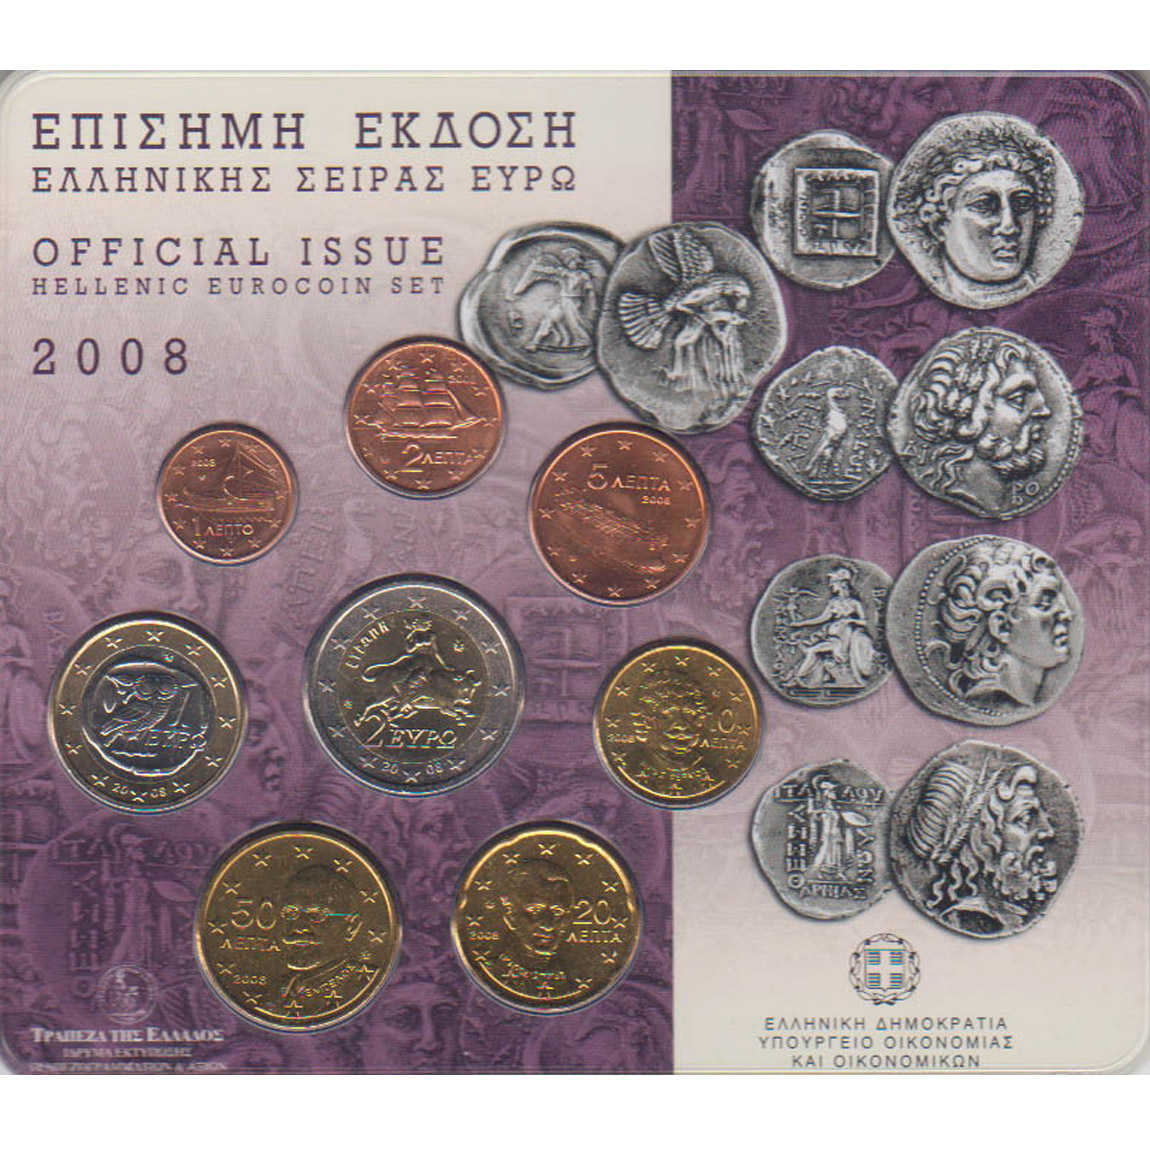  Offiz. Euro-KMS Griechenland *Antike Münzen von Griechenland* 2008 nur 15.000St!   